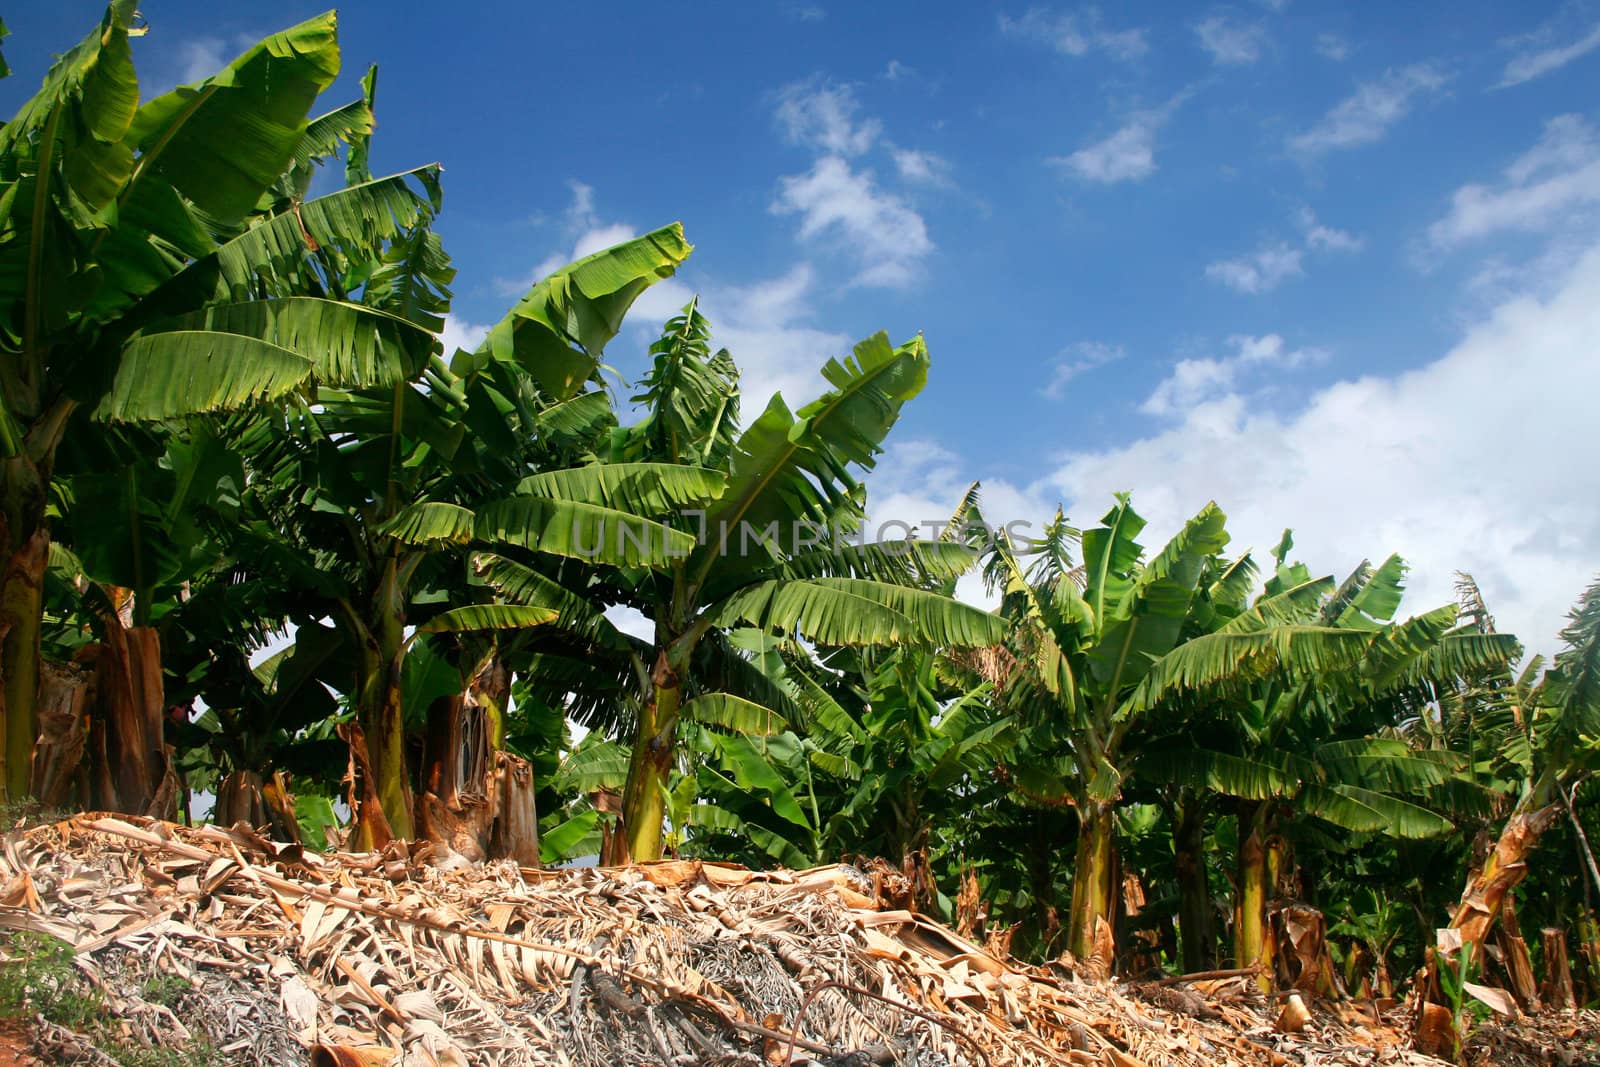 Row of green banana trees on banana production farm, blue sky background